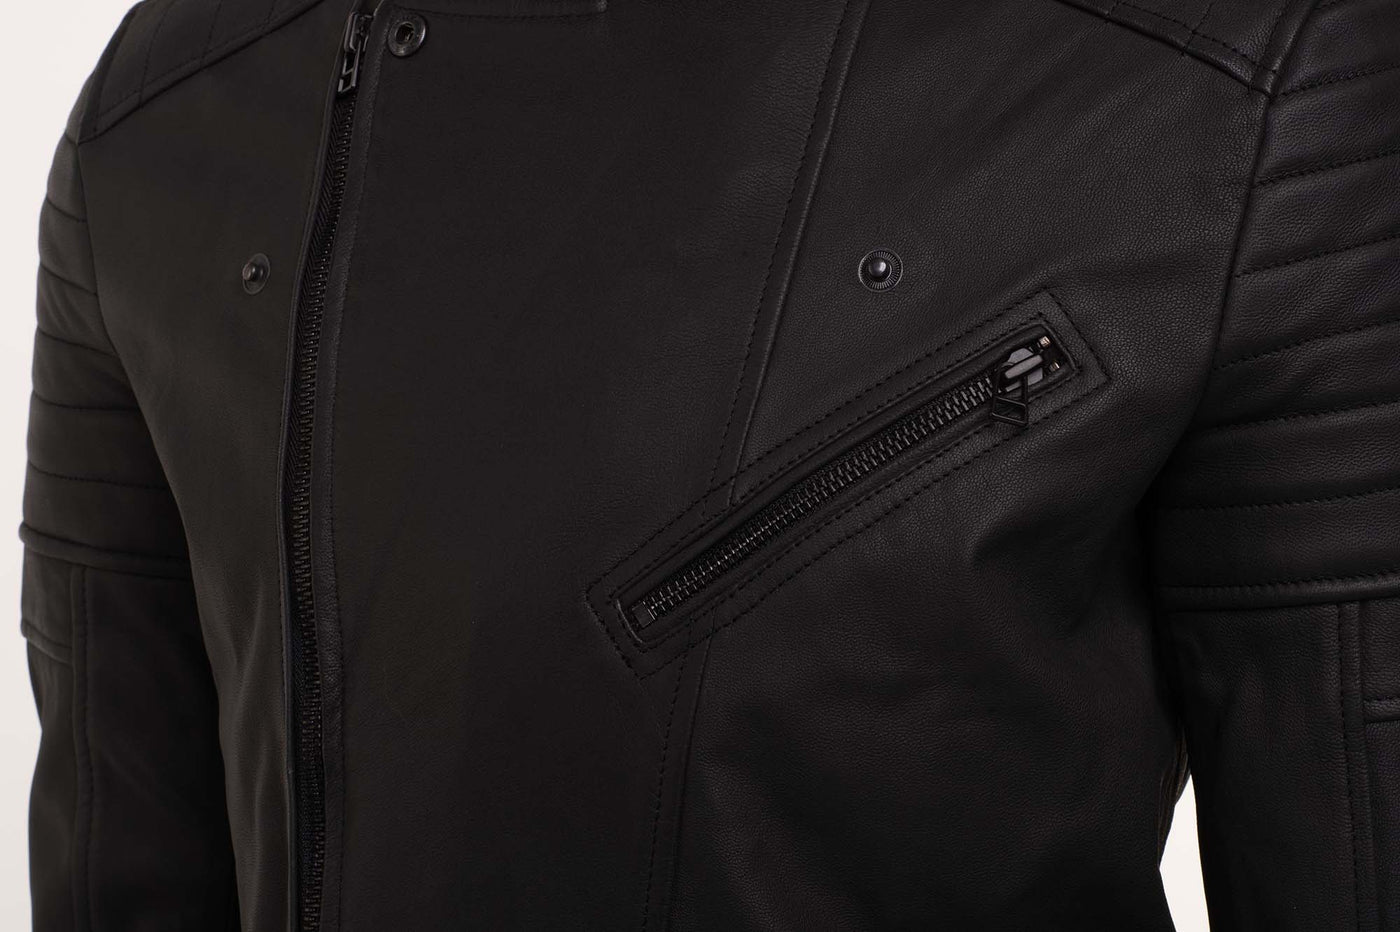 Turner's Matte Leather Biker Jacket